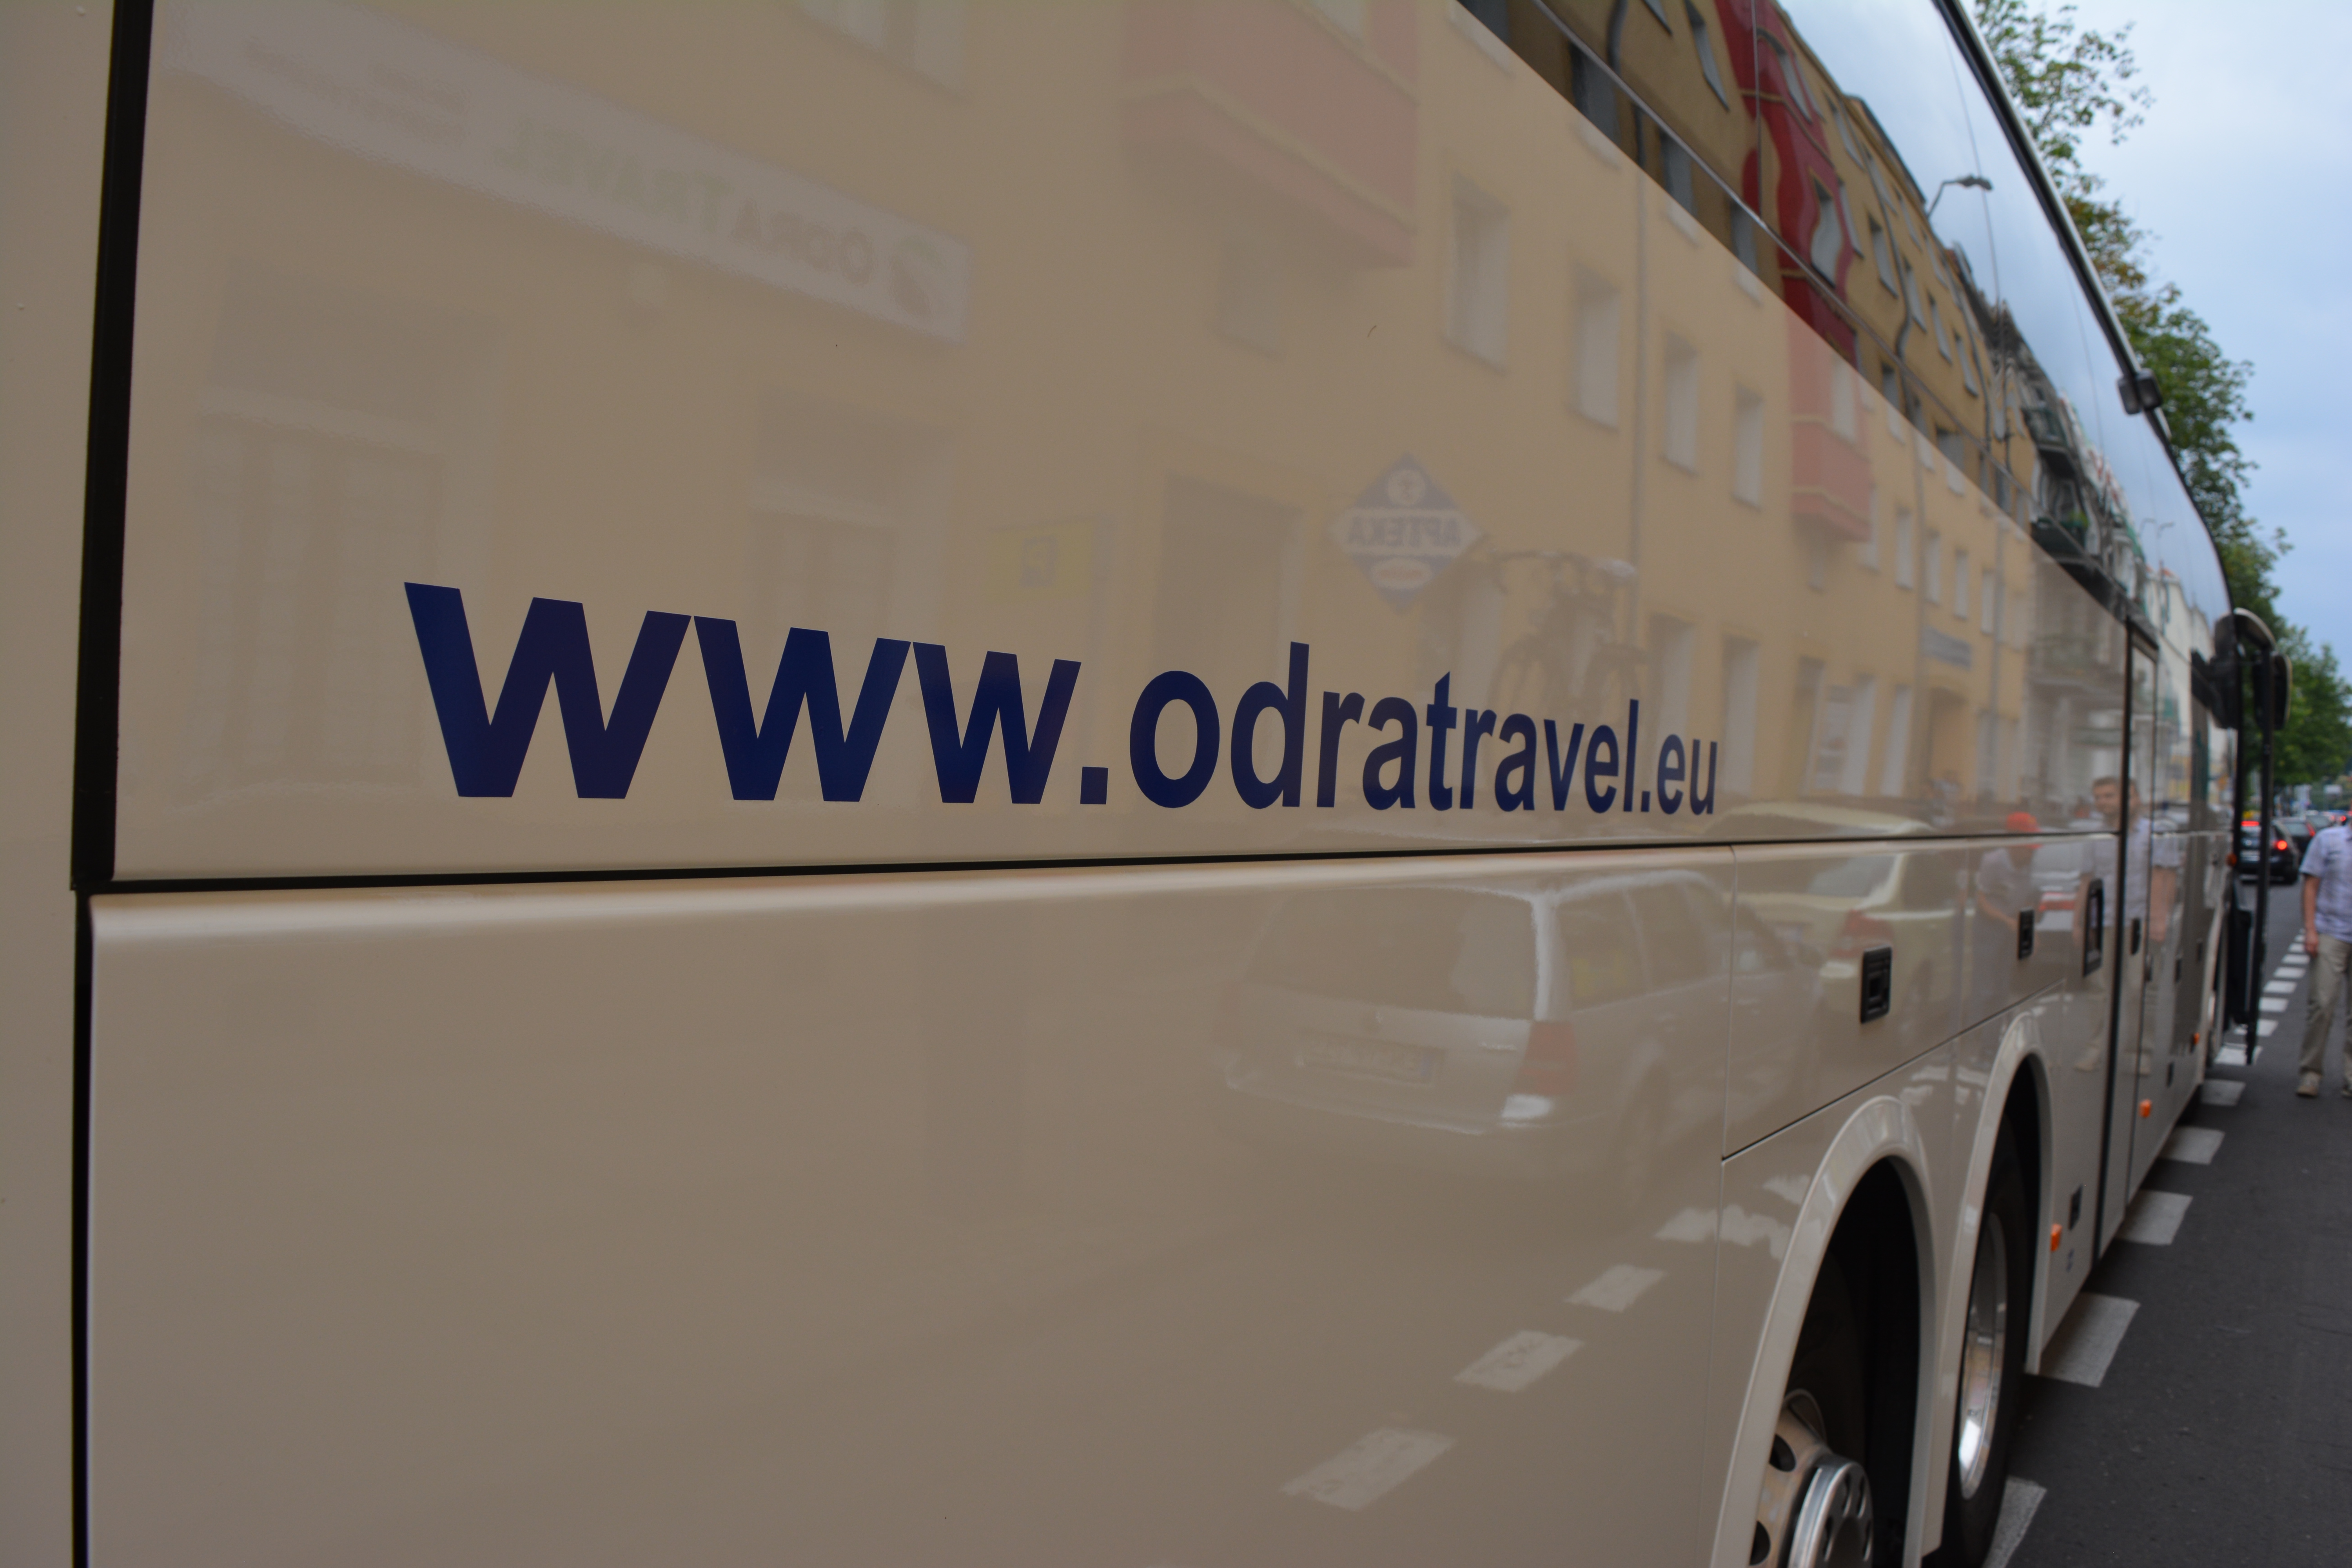 adres strony internetowej biura podróży OdraTravel na burcie autokaru